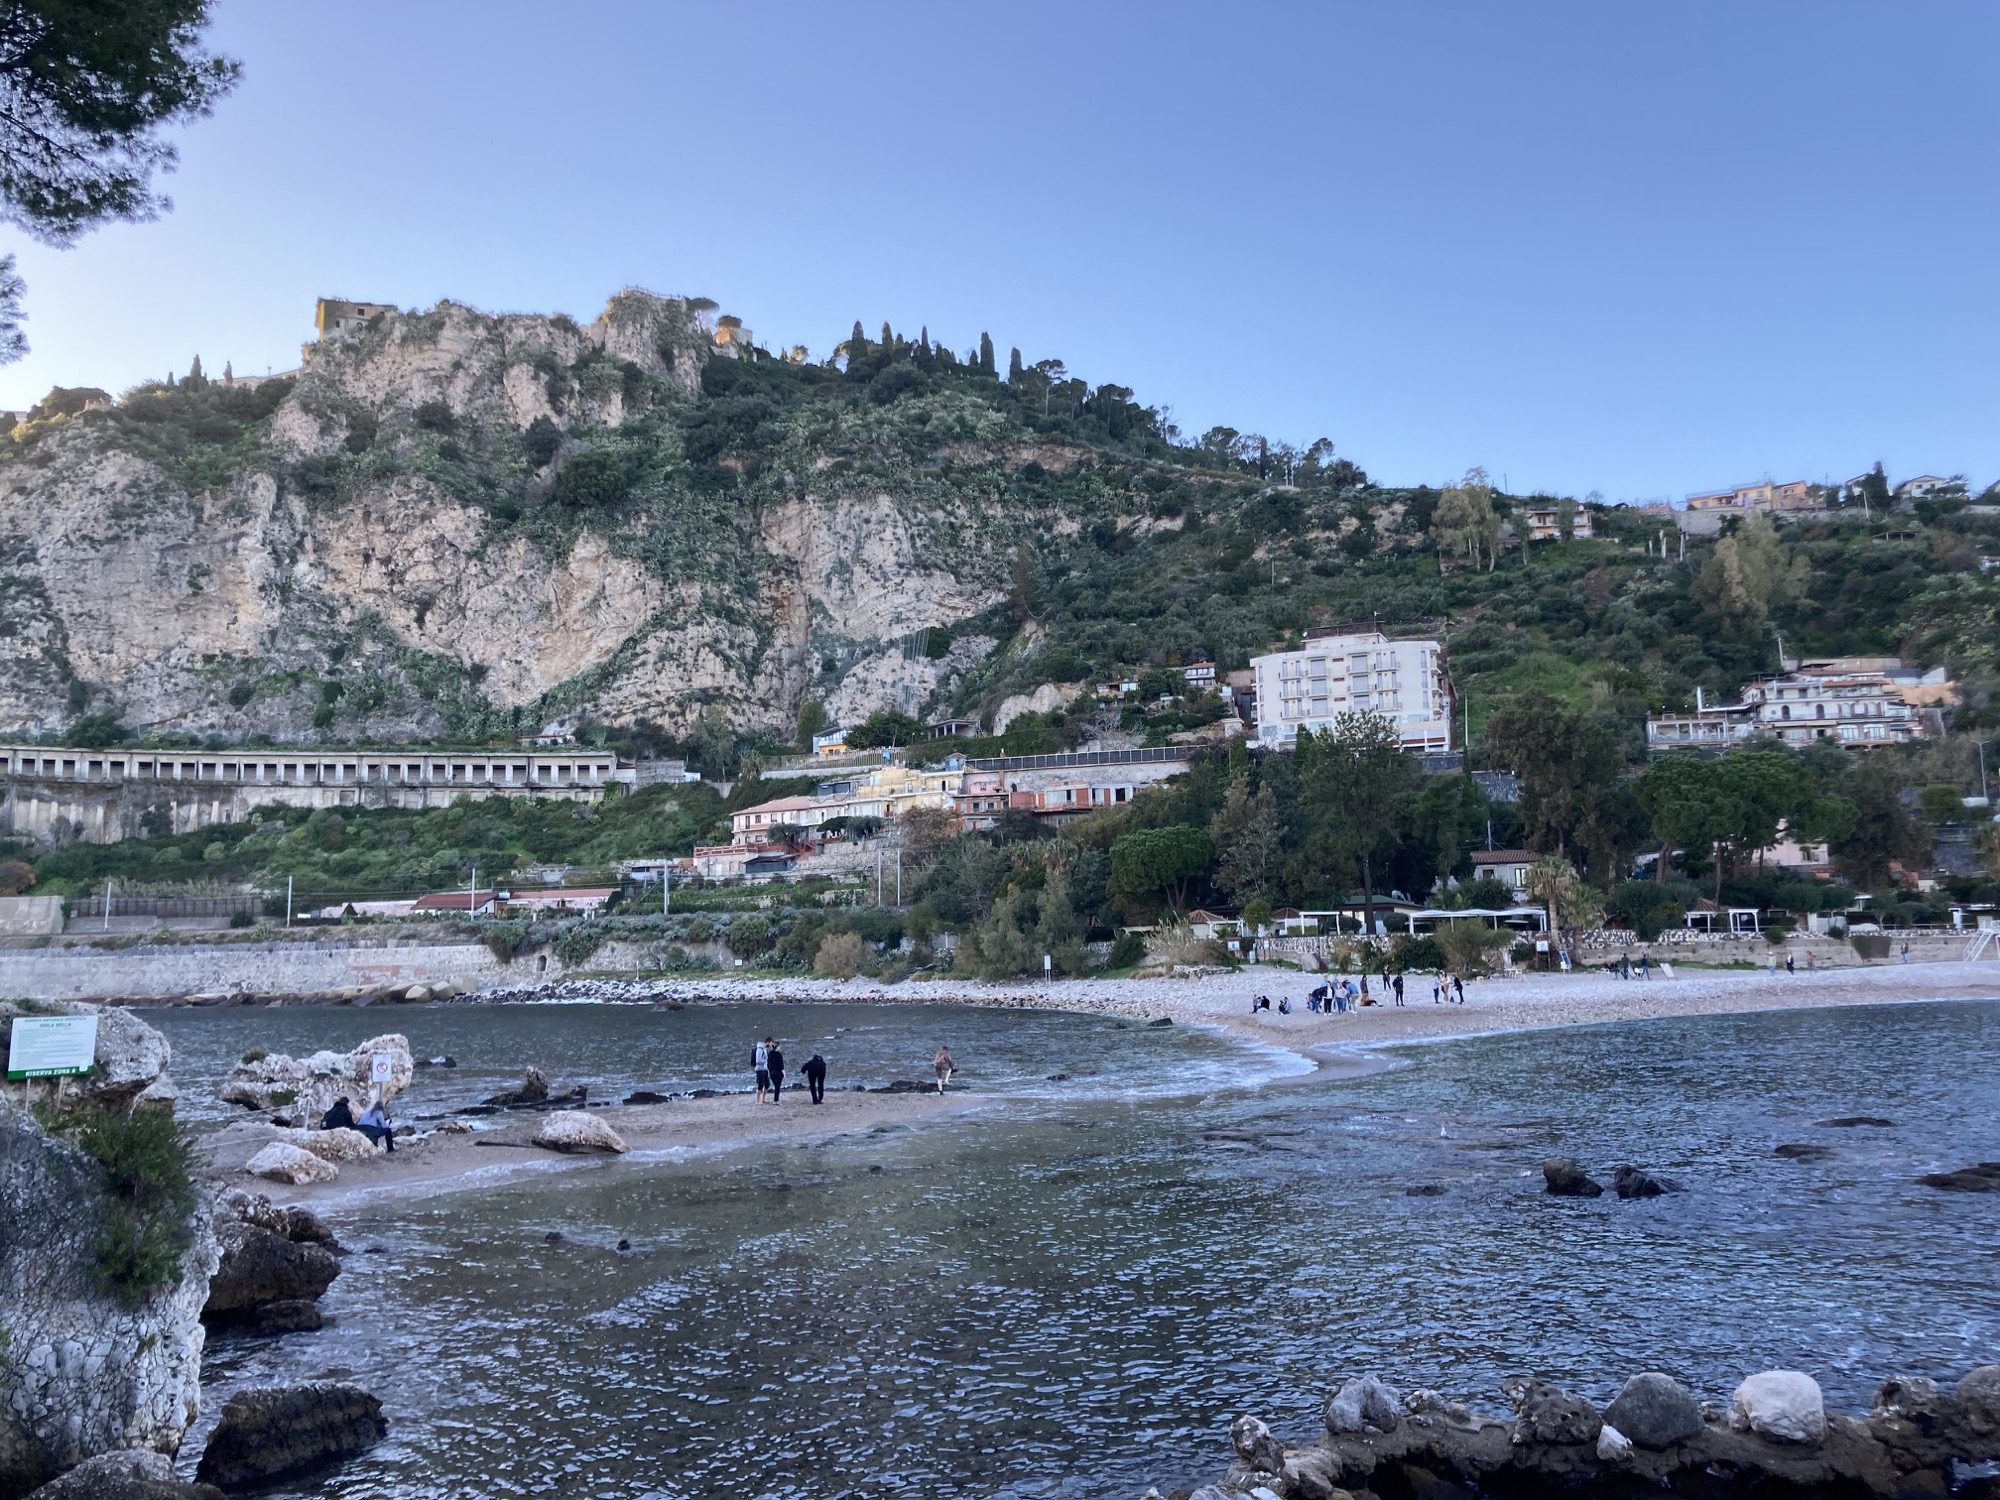 Blick von der Isola Bella aus auf die Sandbank, die durchwatet werden muss, um die Insel zu erreichen, im Hintergrund die Küstenstadt Taormina